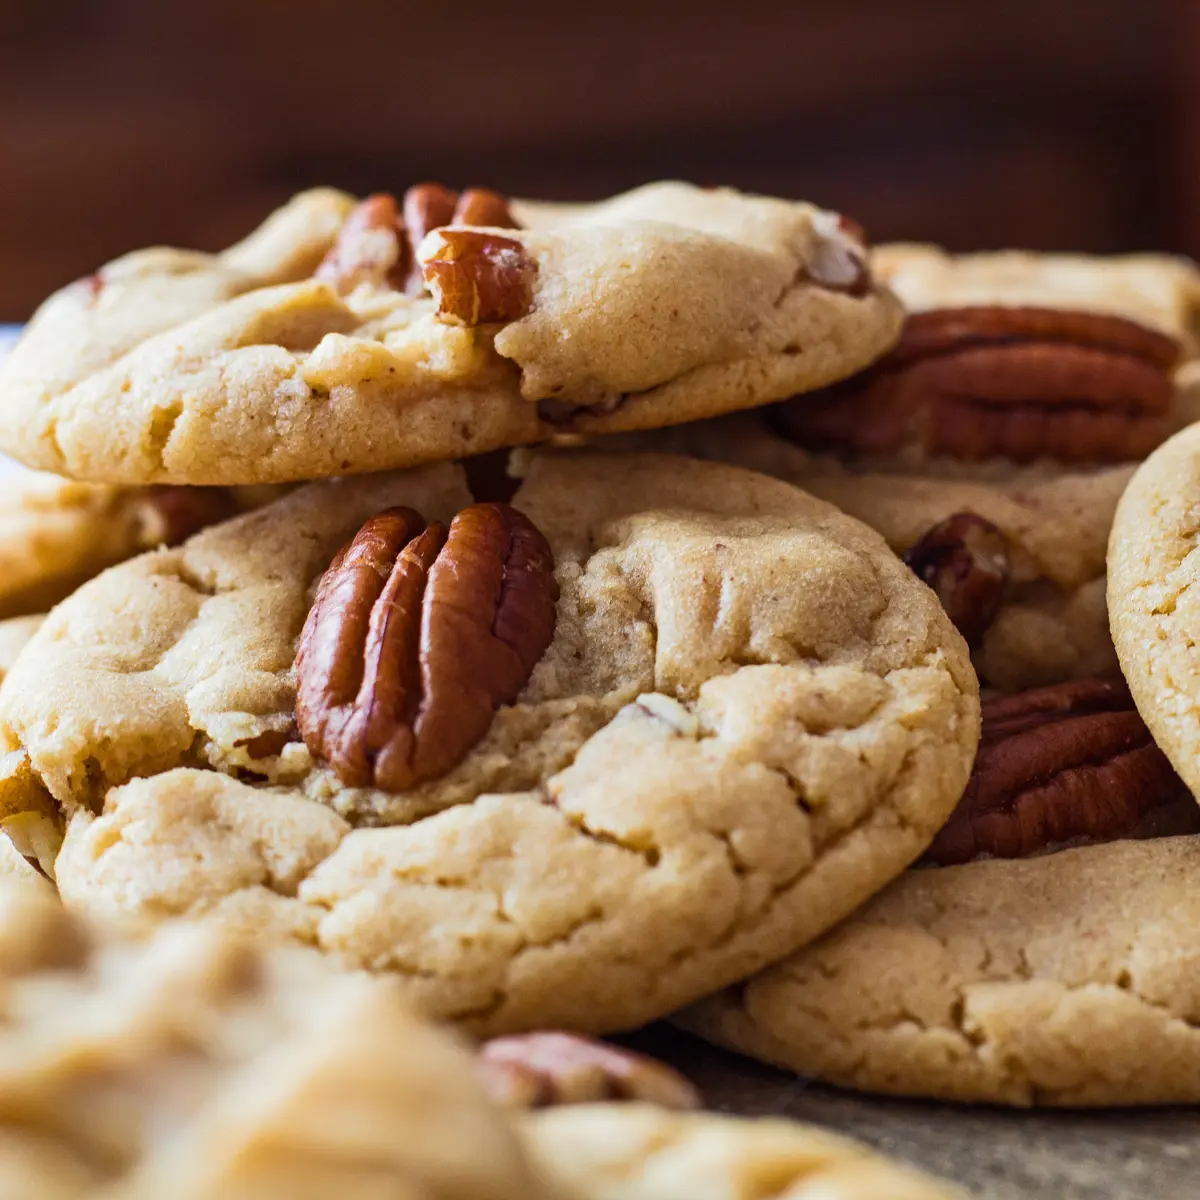 Grande image carrée de biscuits aux pacanes au beurre d'arachide empilés de manière lâche.